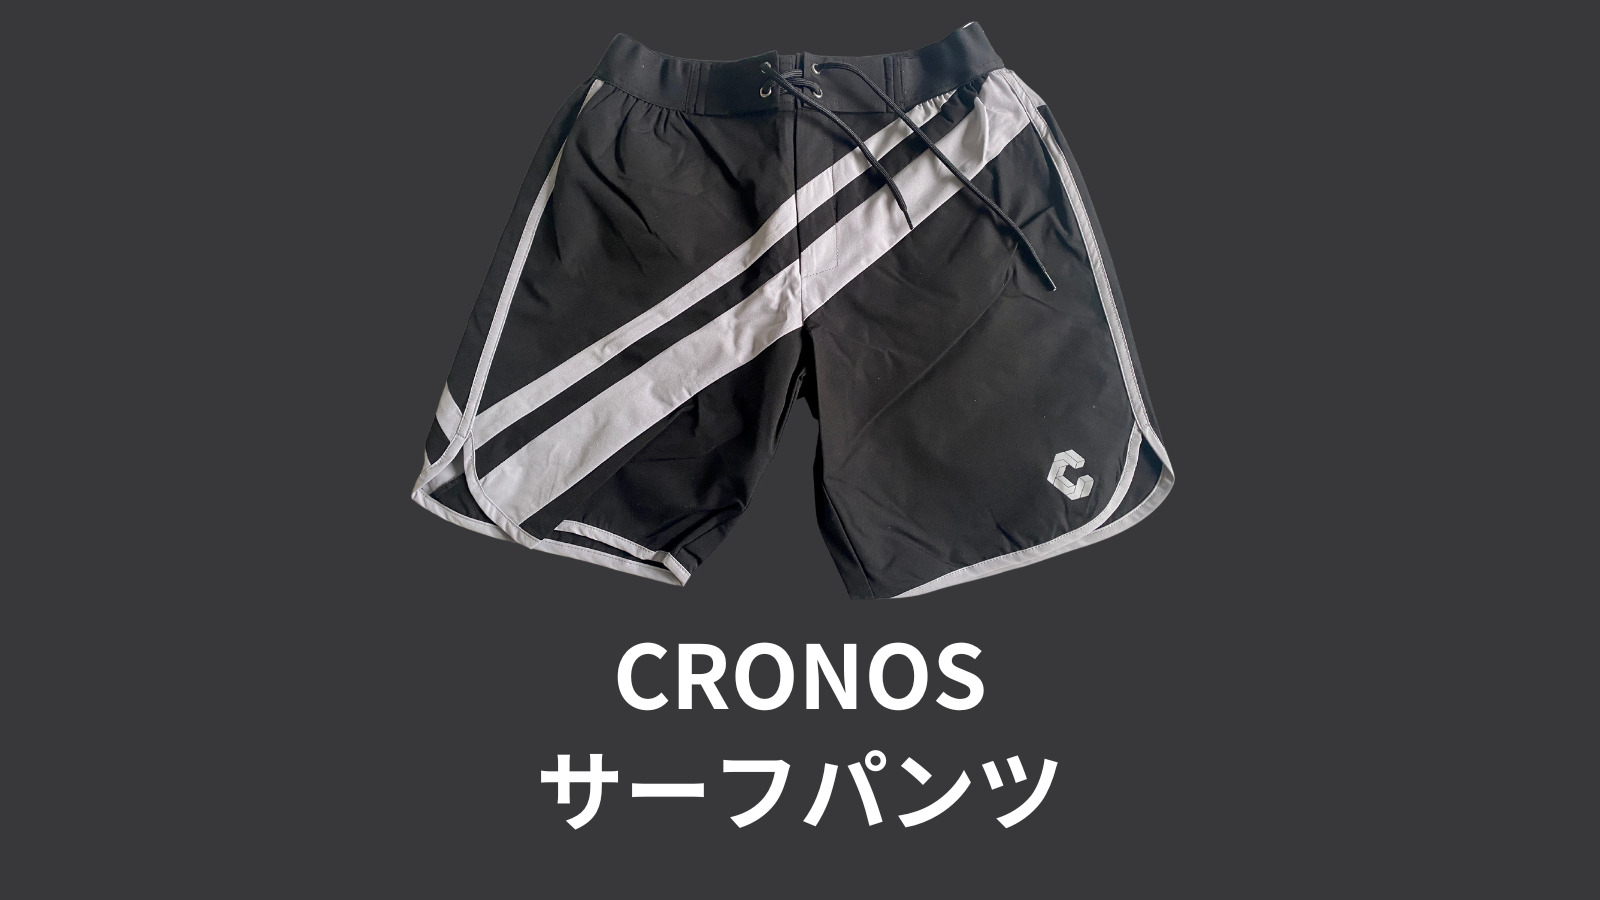 あす楽対応 CRONOS cronos クロノス フィジーク サーフパンツ サイズS 